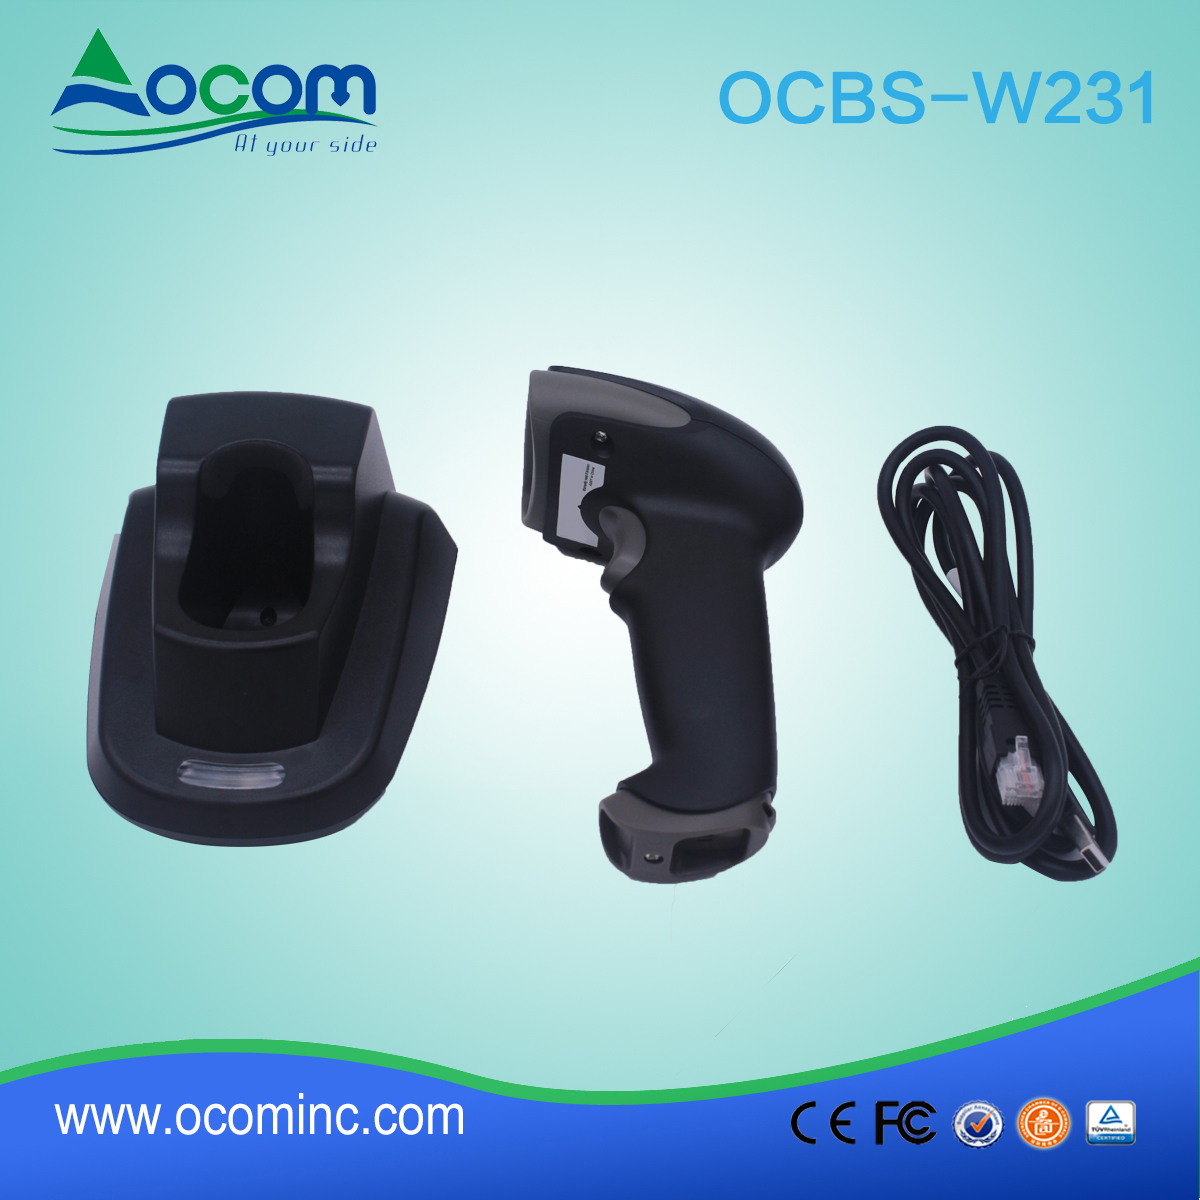 (OCBS-W231) Escáner de código de barras 2D inalámbrico de alta calidad con cuna